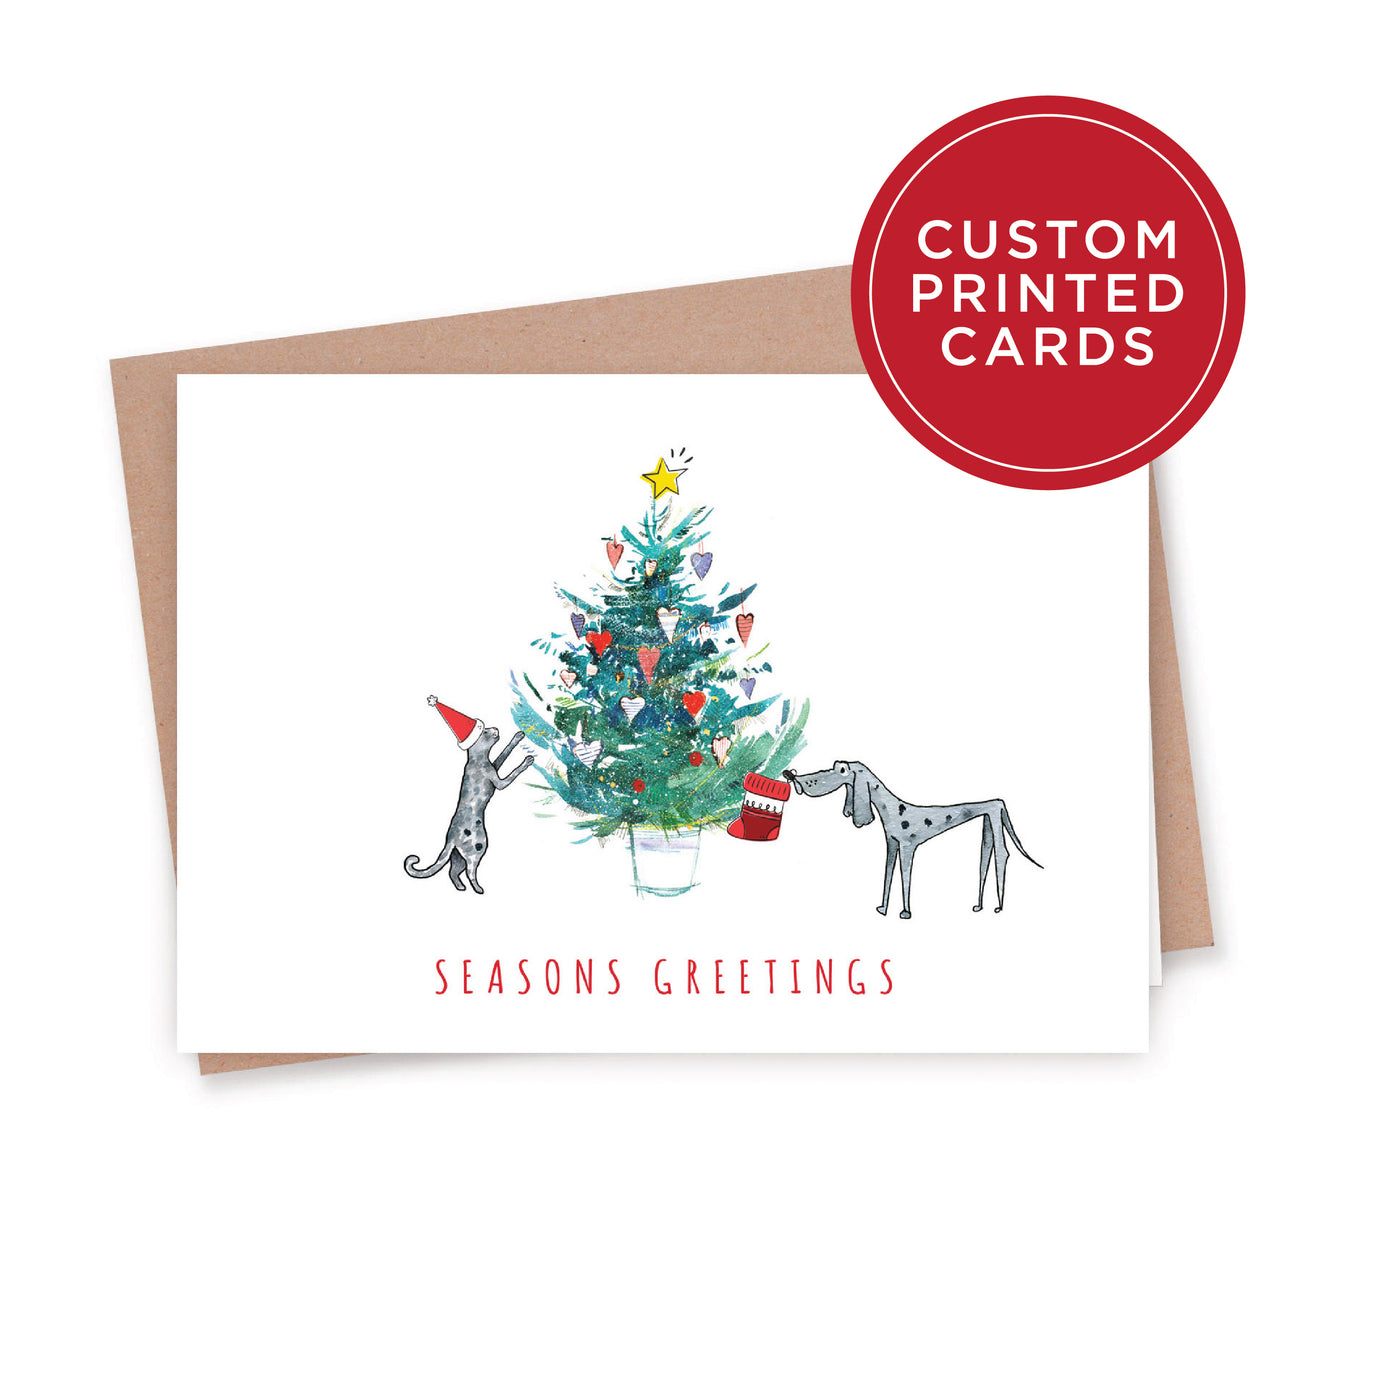 Custom Printed Christmas Card Packs - Seasons Greetings 2